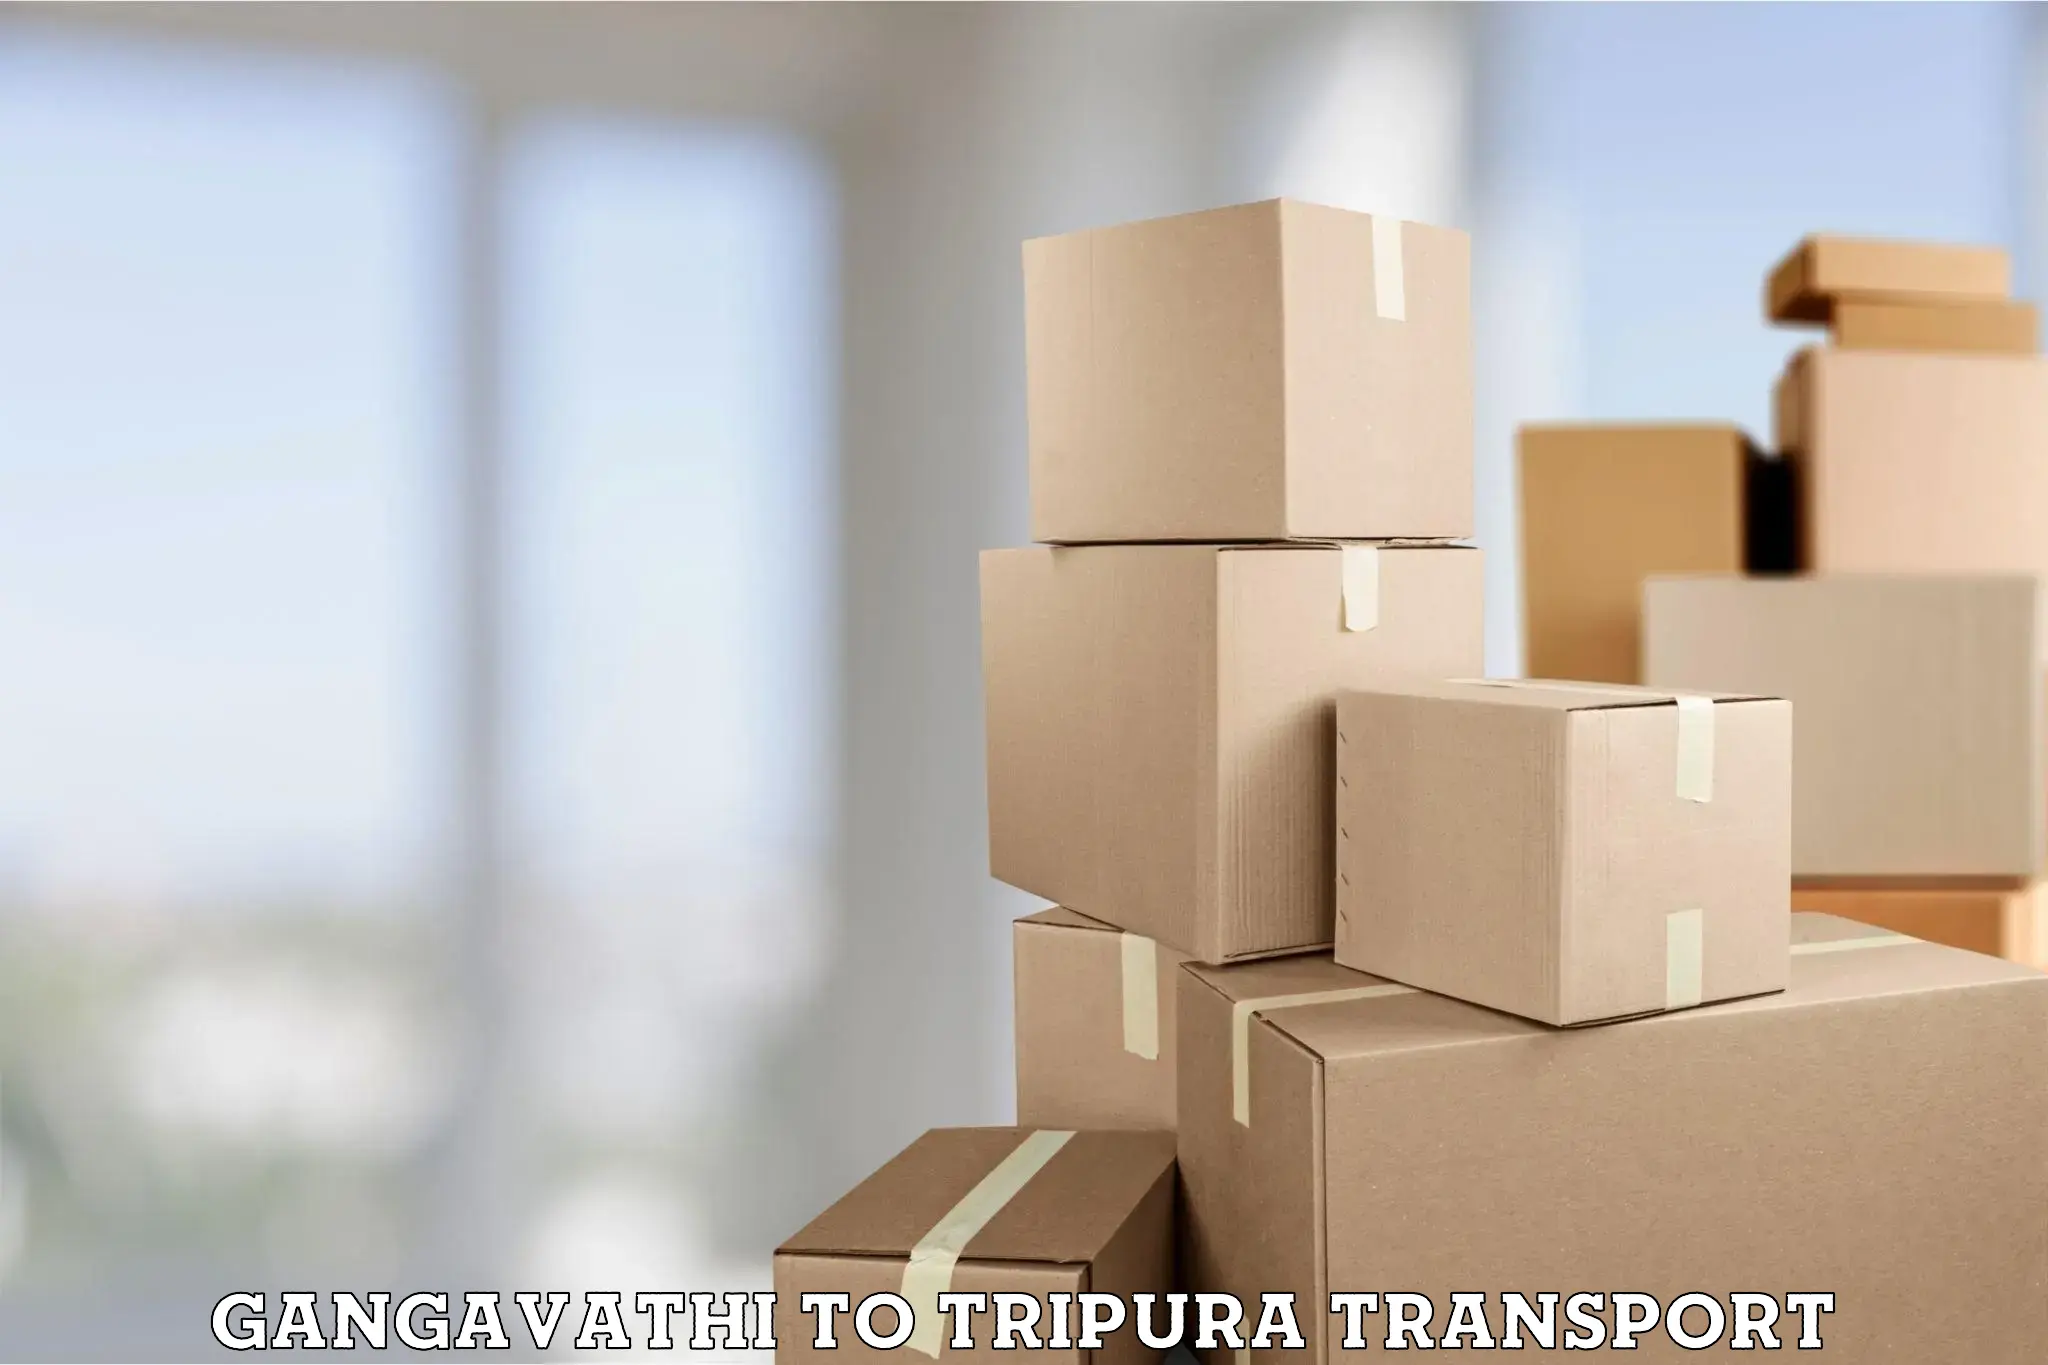 Nationwide transport services Gangavathi to Udaipur Tripura